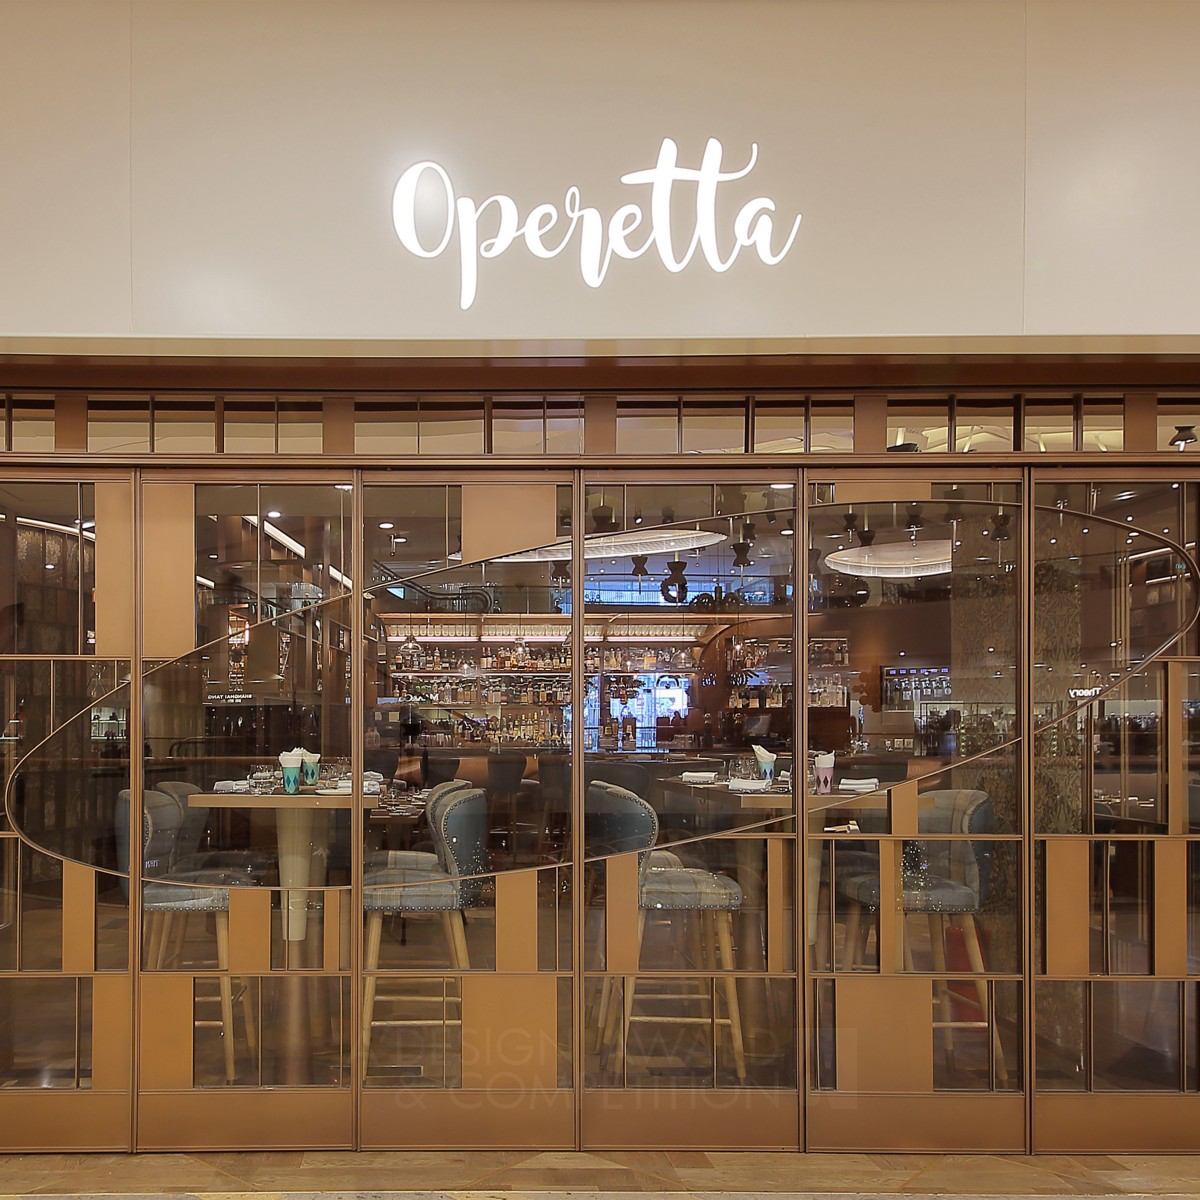 Operetta Restaurant by Monique Lee